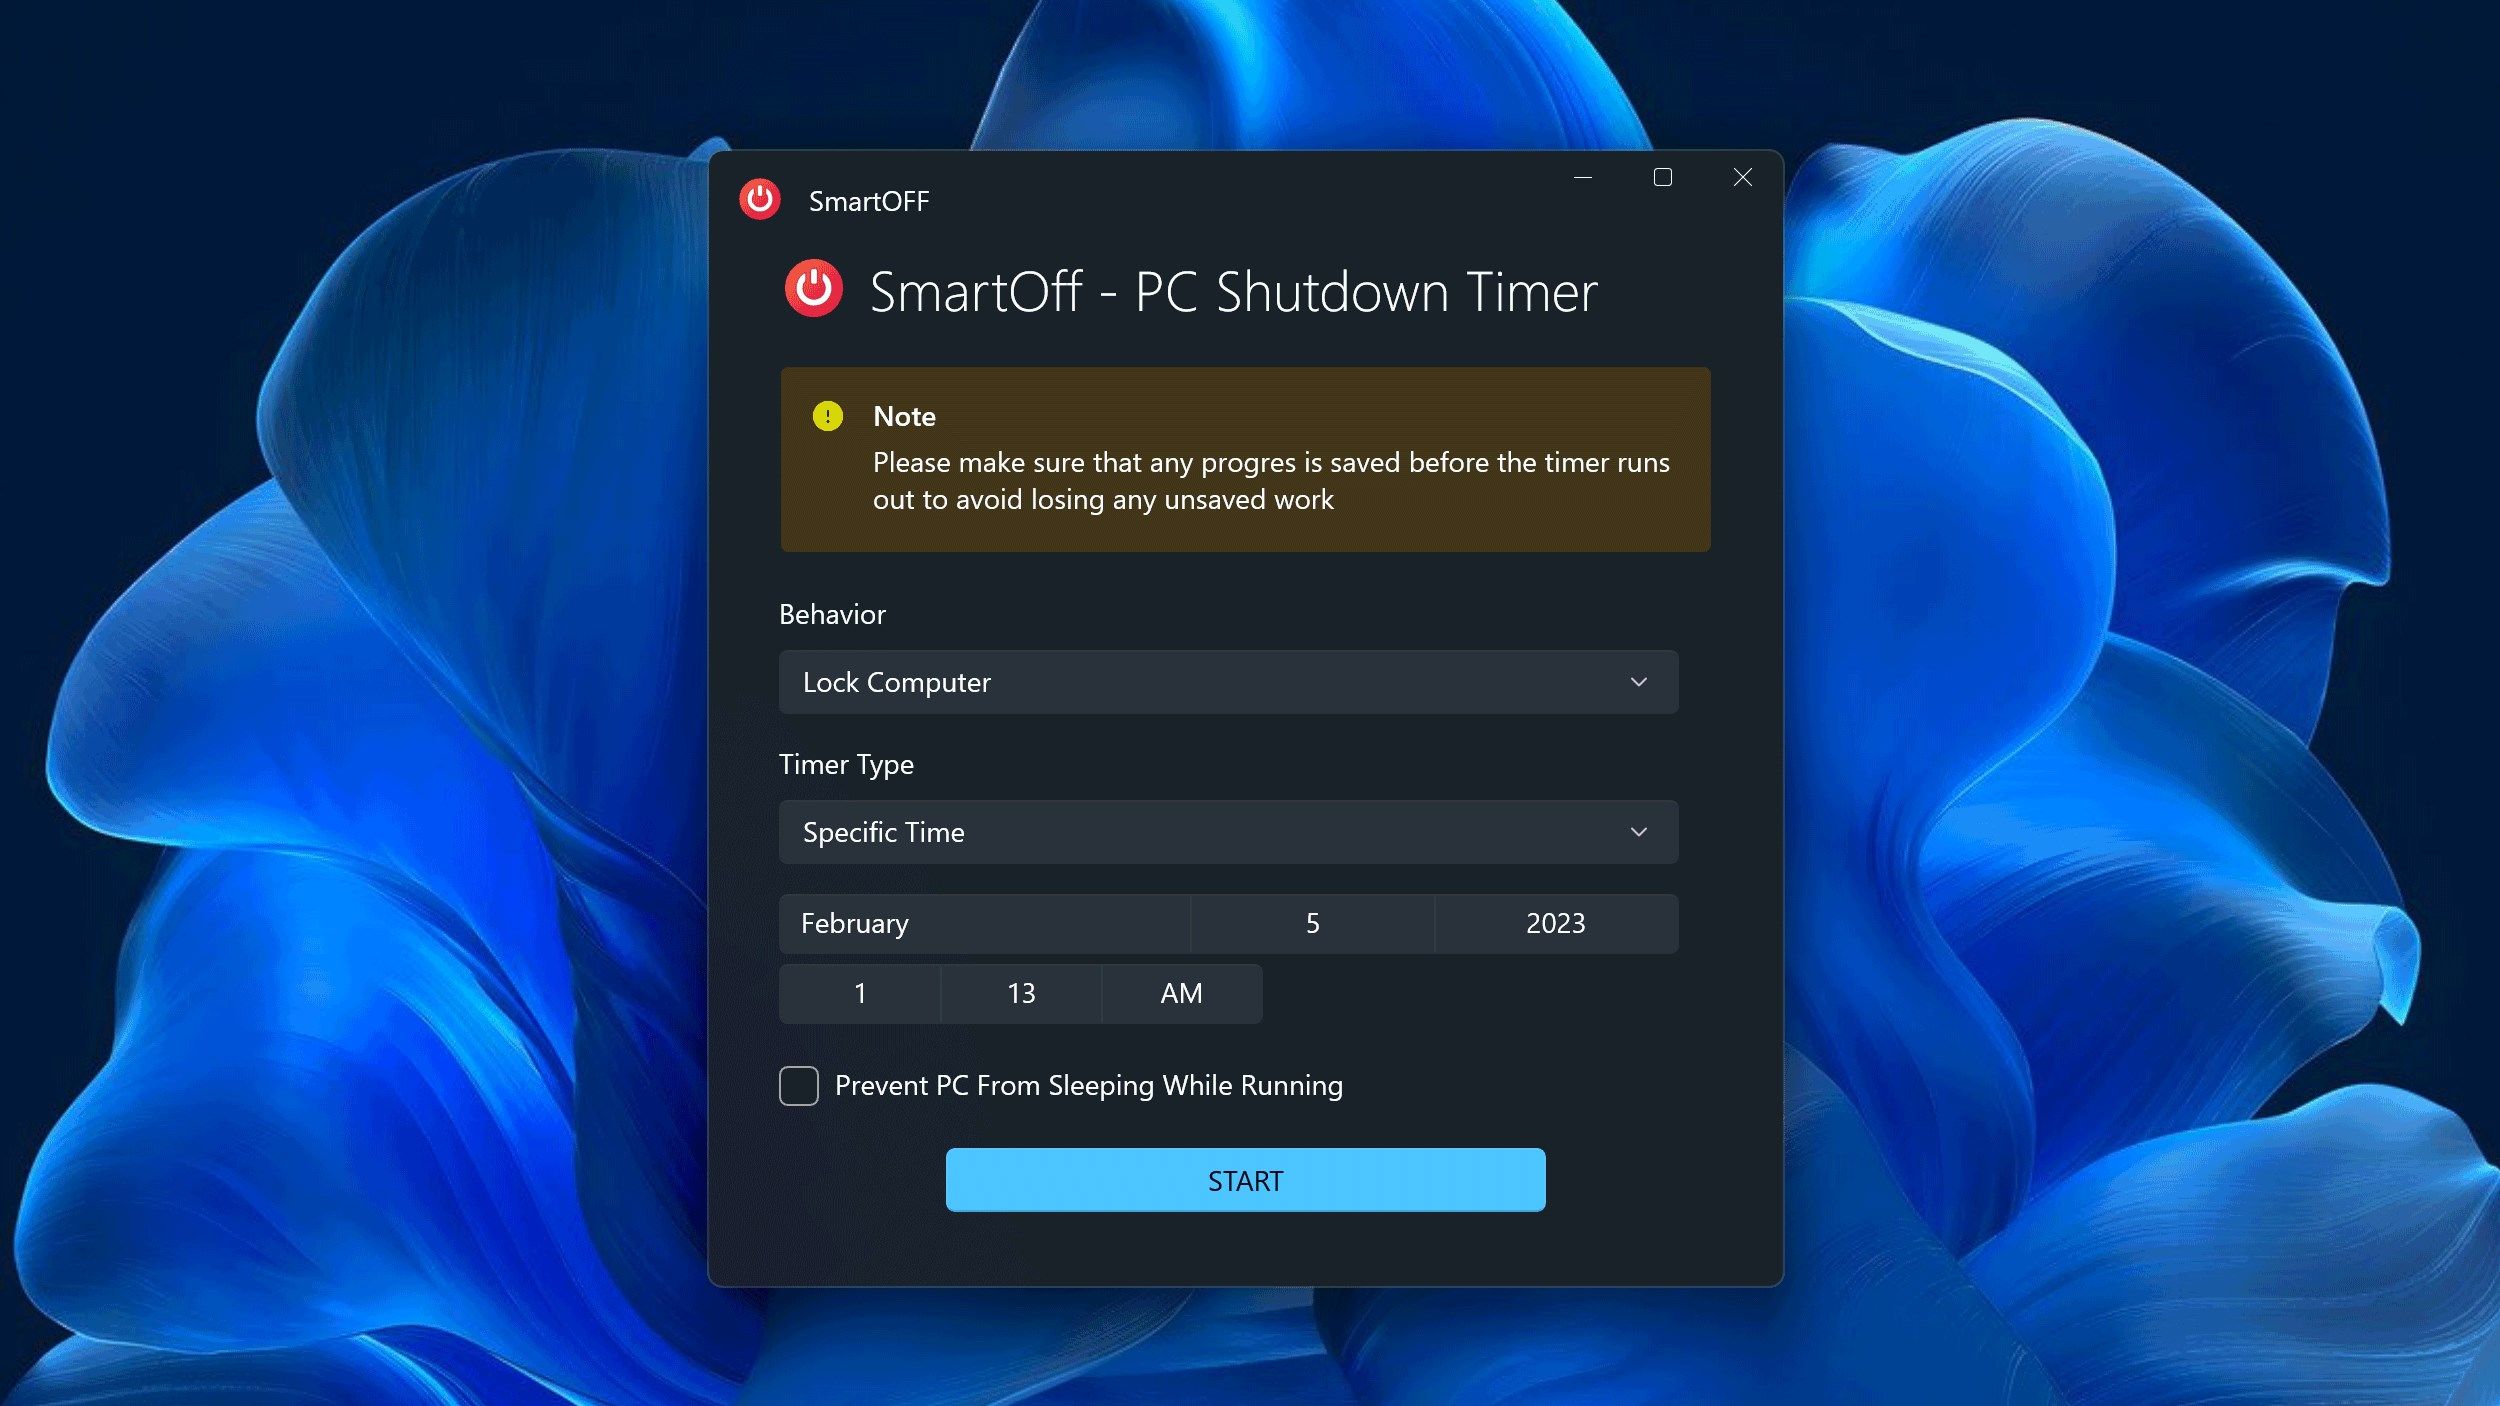 SmartOff - PC Shutdown Timer